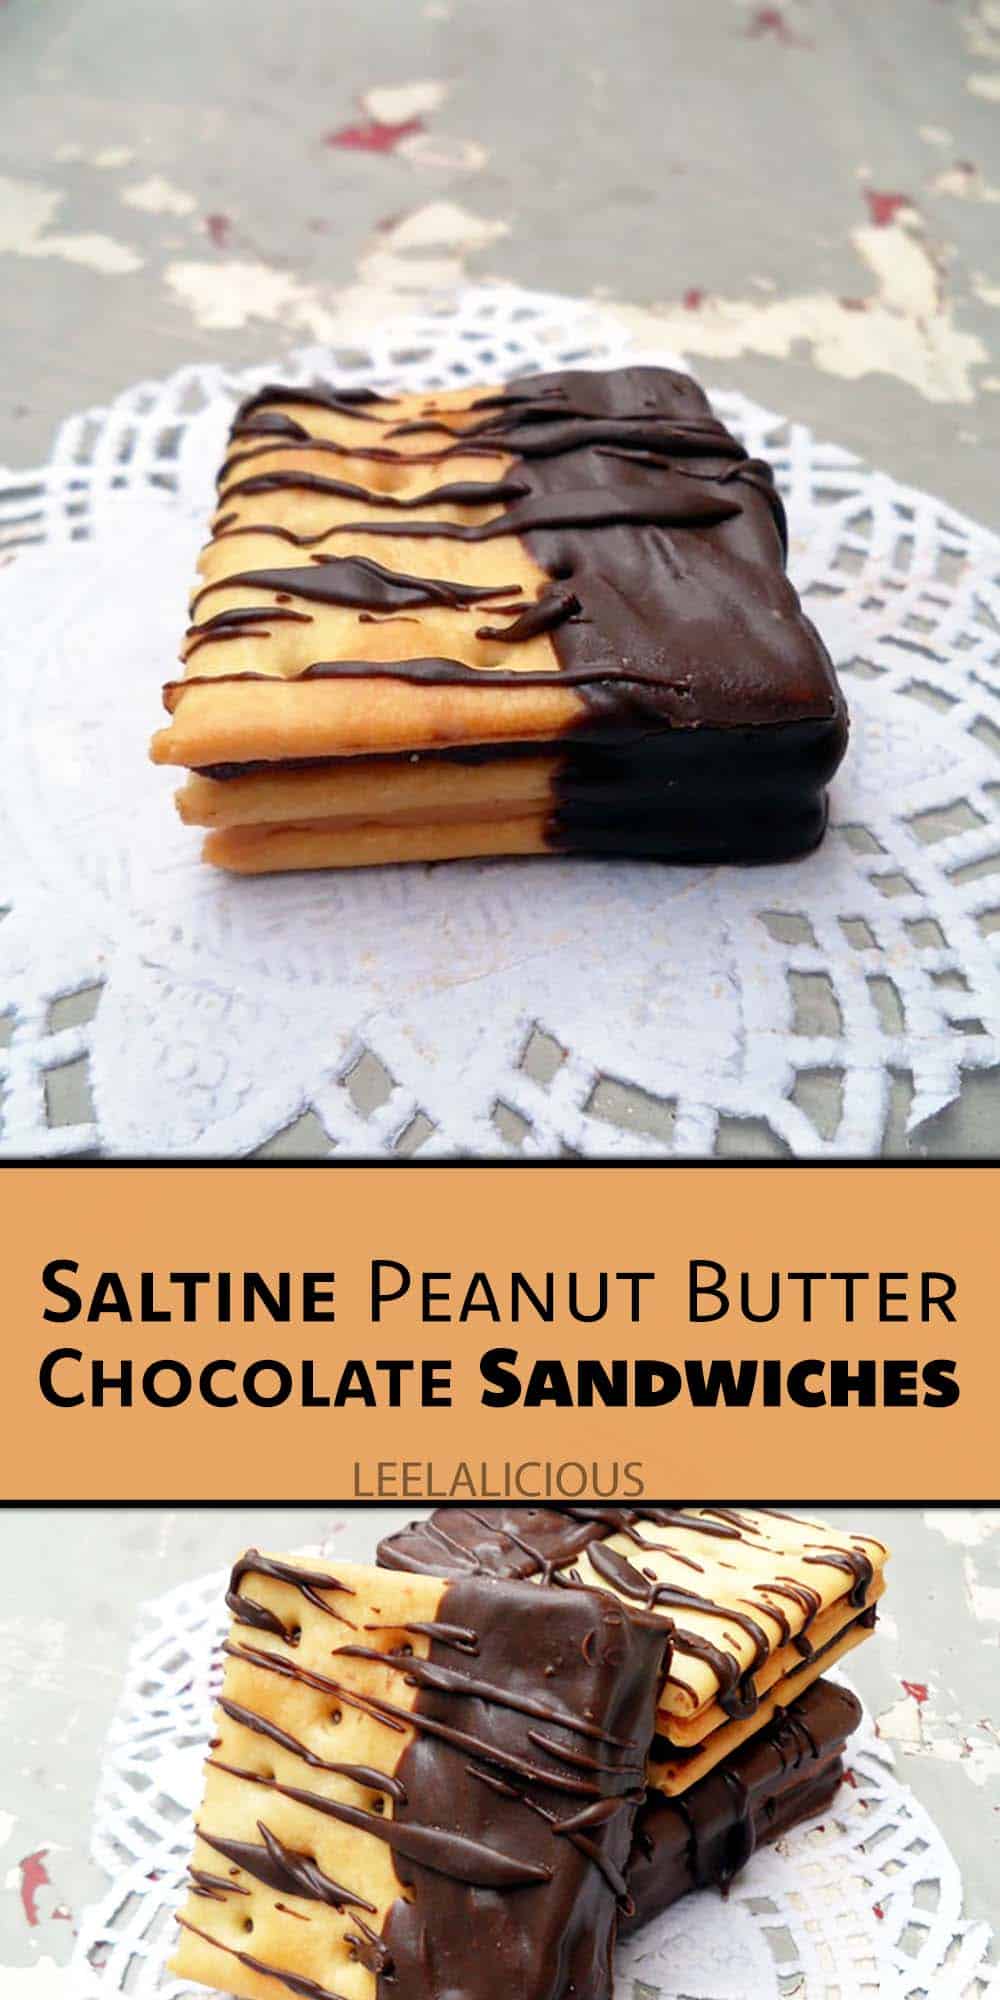 Saltine Peanut Butter Chocolate Sandwiches